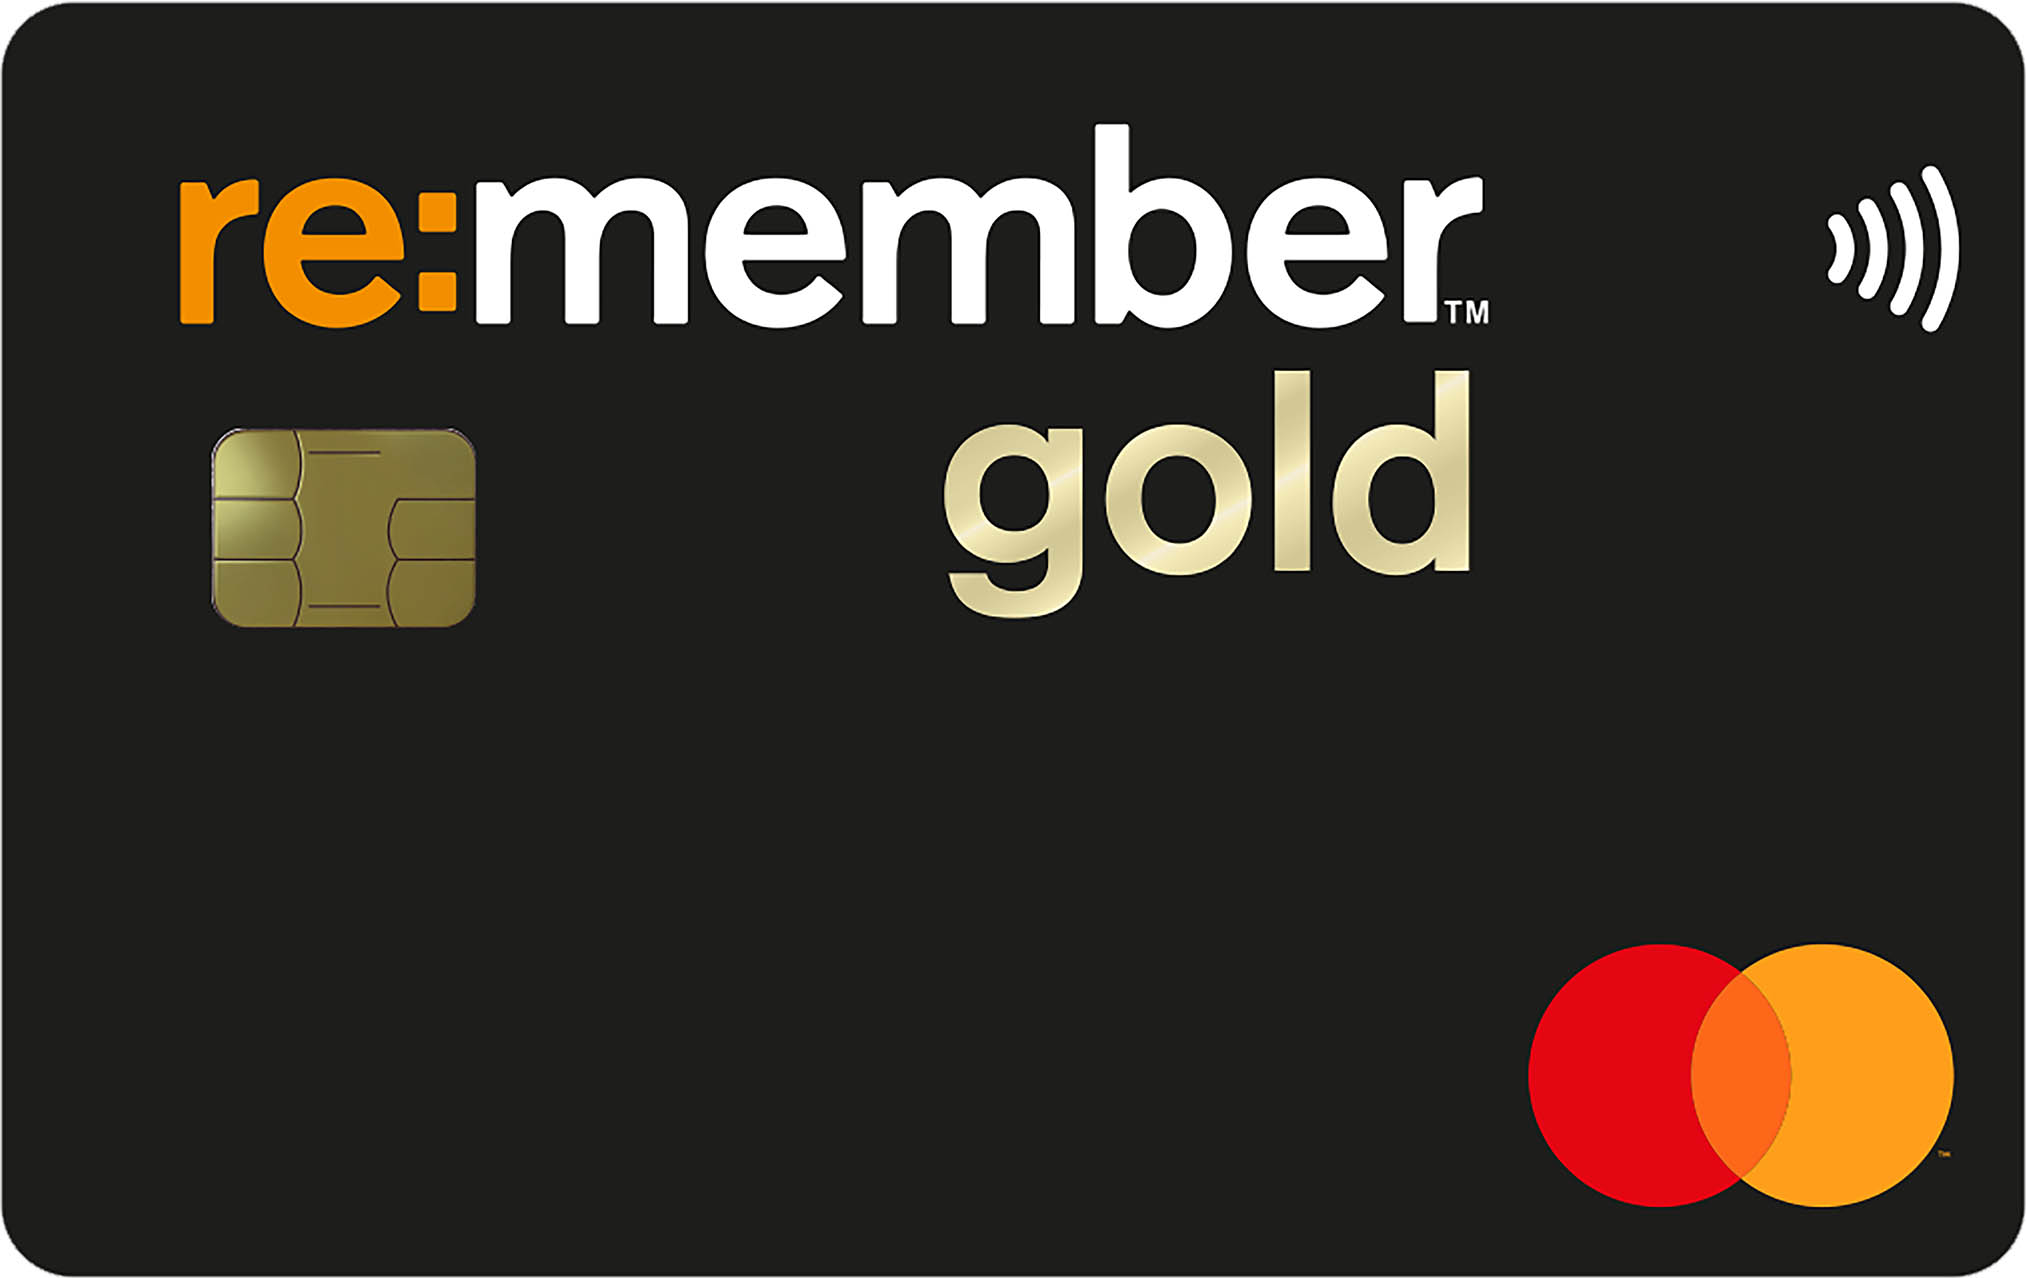 re:member gold kredittkort